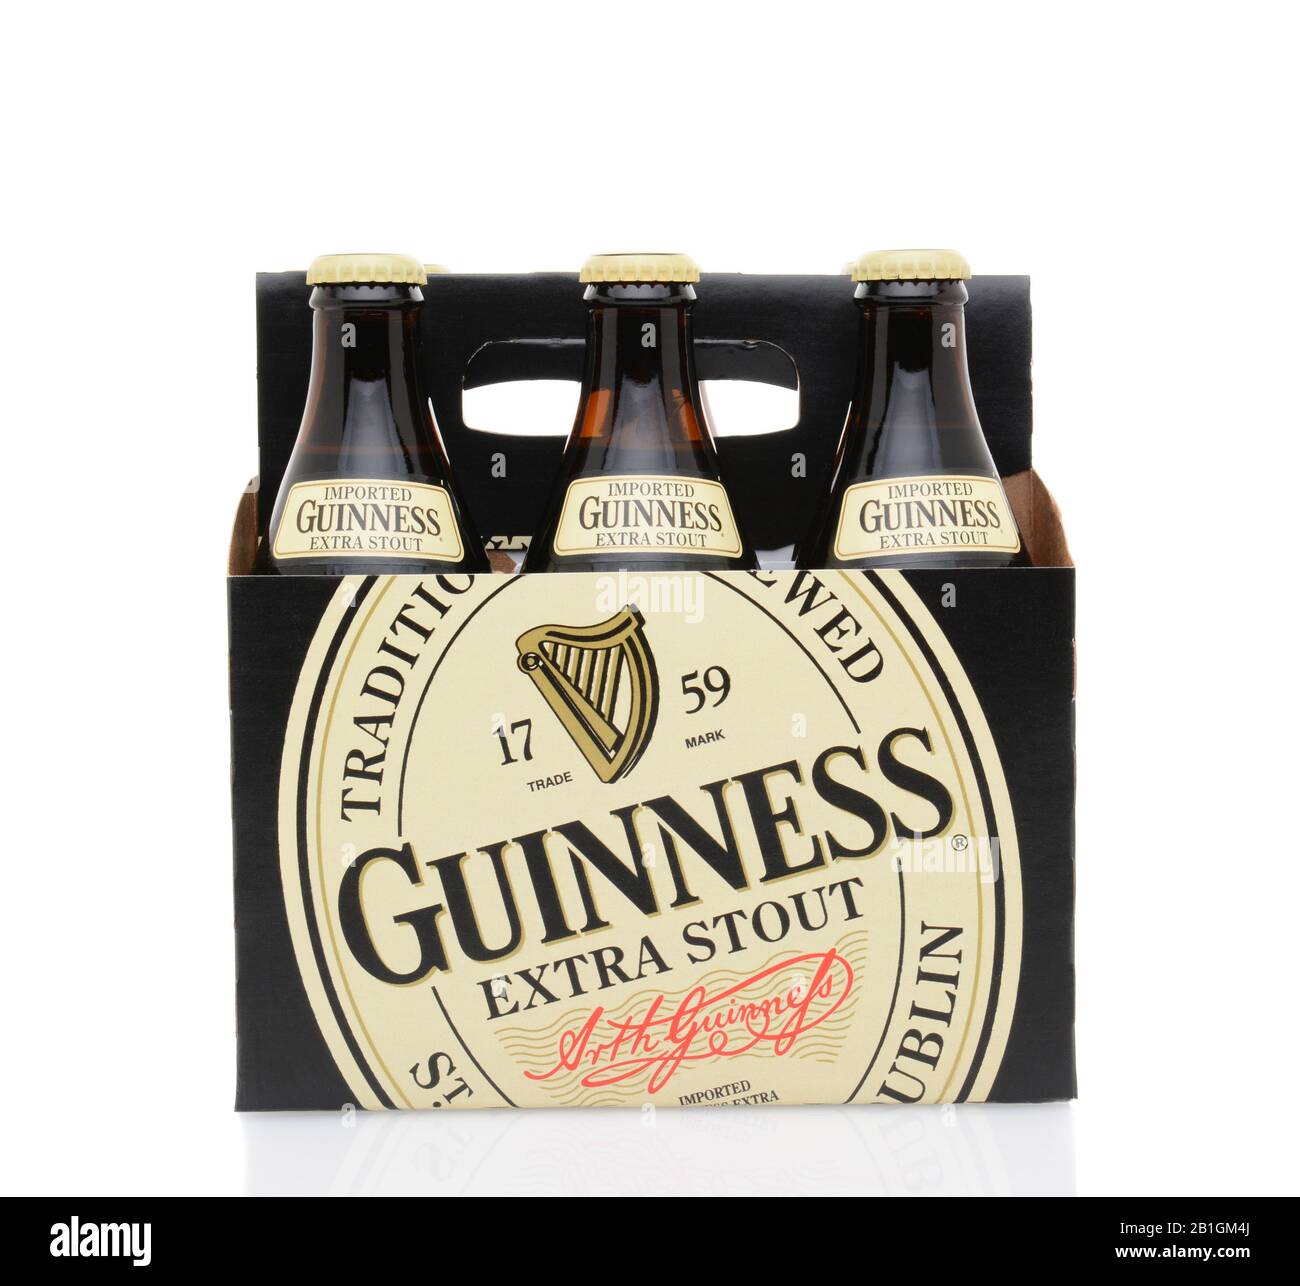 Irvine, California - 25 MAGGIO 2014: Confezione da 6 confezioni di Guinness Extra Stout. La birra irlandese è una delle marche di birra più di successo al mondo con vendite annuali superiori a 85 Foto Stock